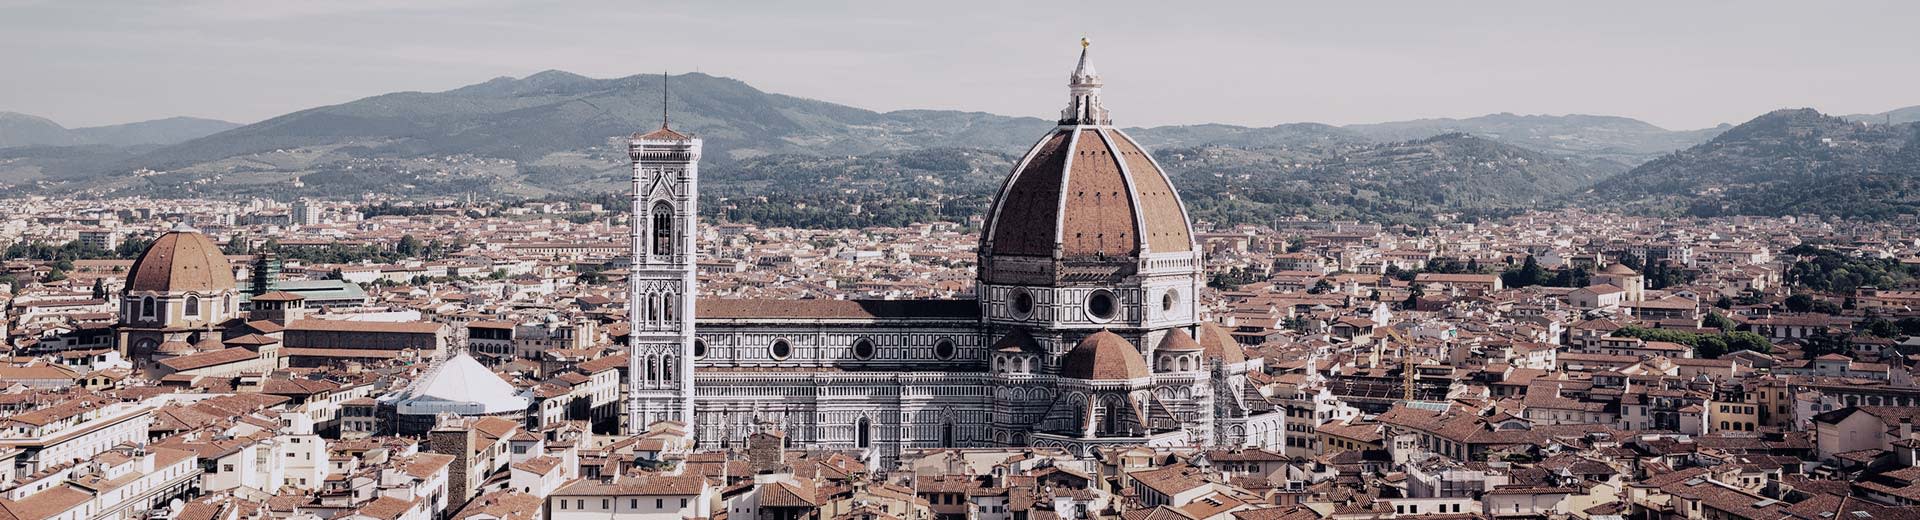 La belle ligne d'horizon de Florence par une journée claire et chaude. Domine la région est une grande et belle cathédrale.